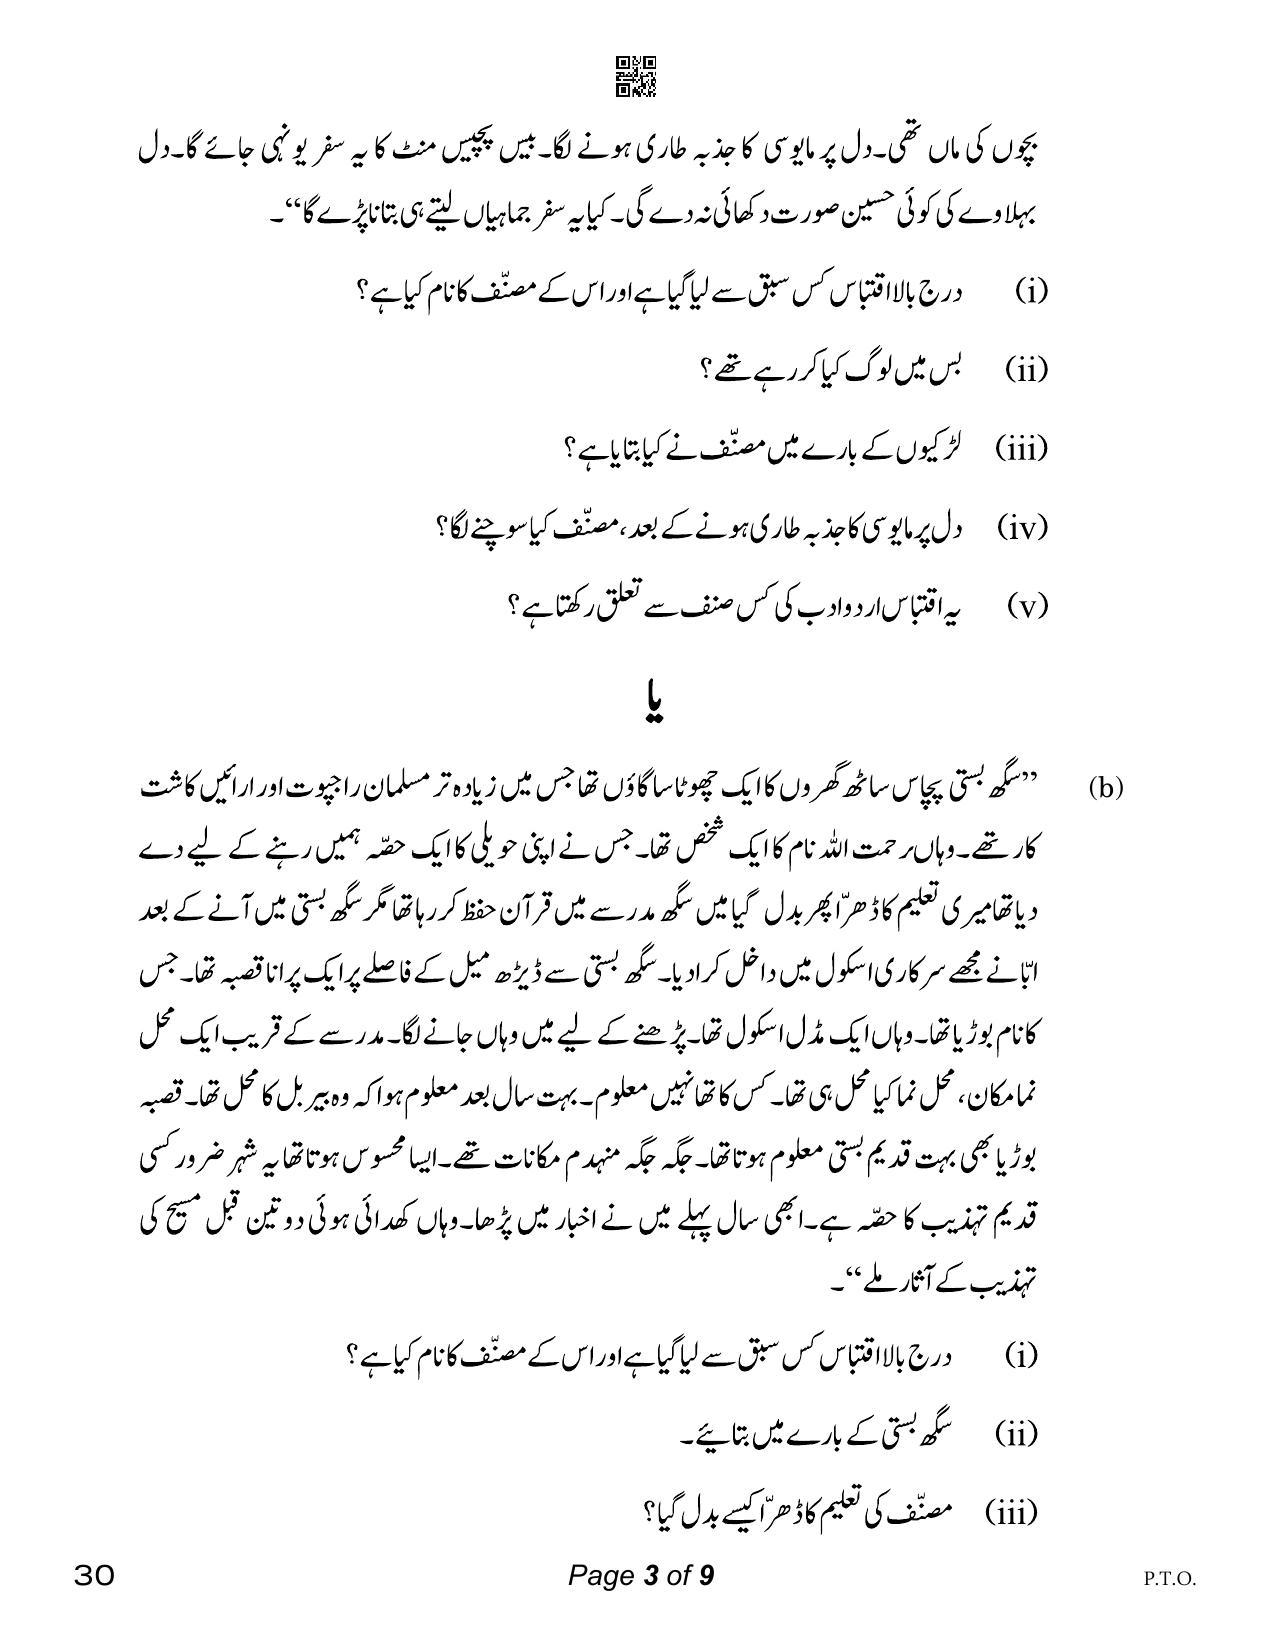 CBSE Class 12 Urdu Elective (Compartment) 2023 Question Paper - Page 3